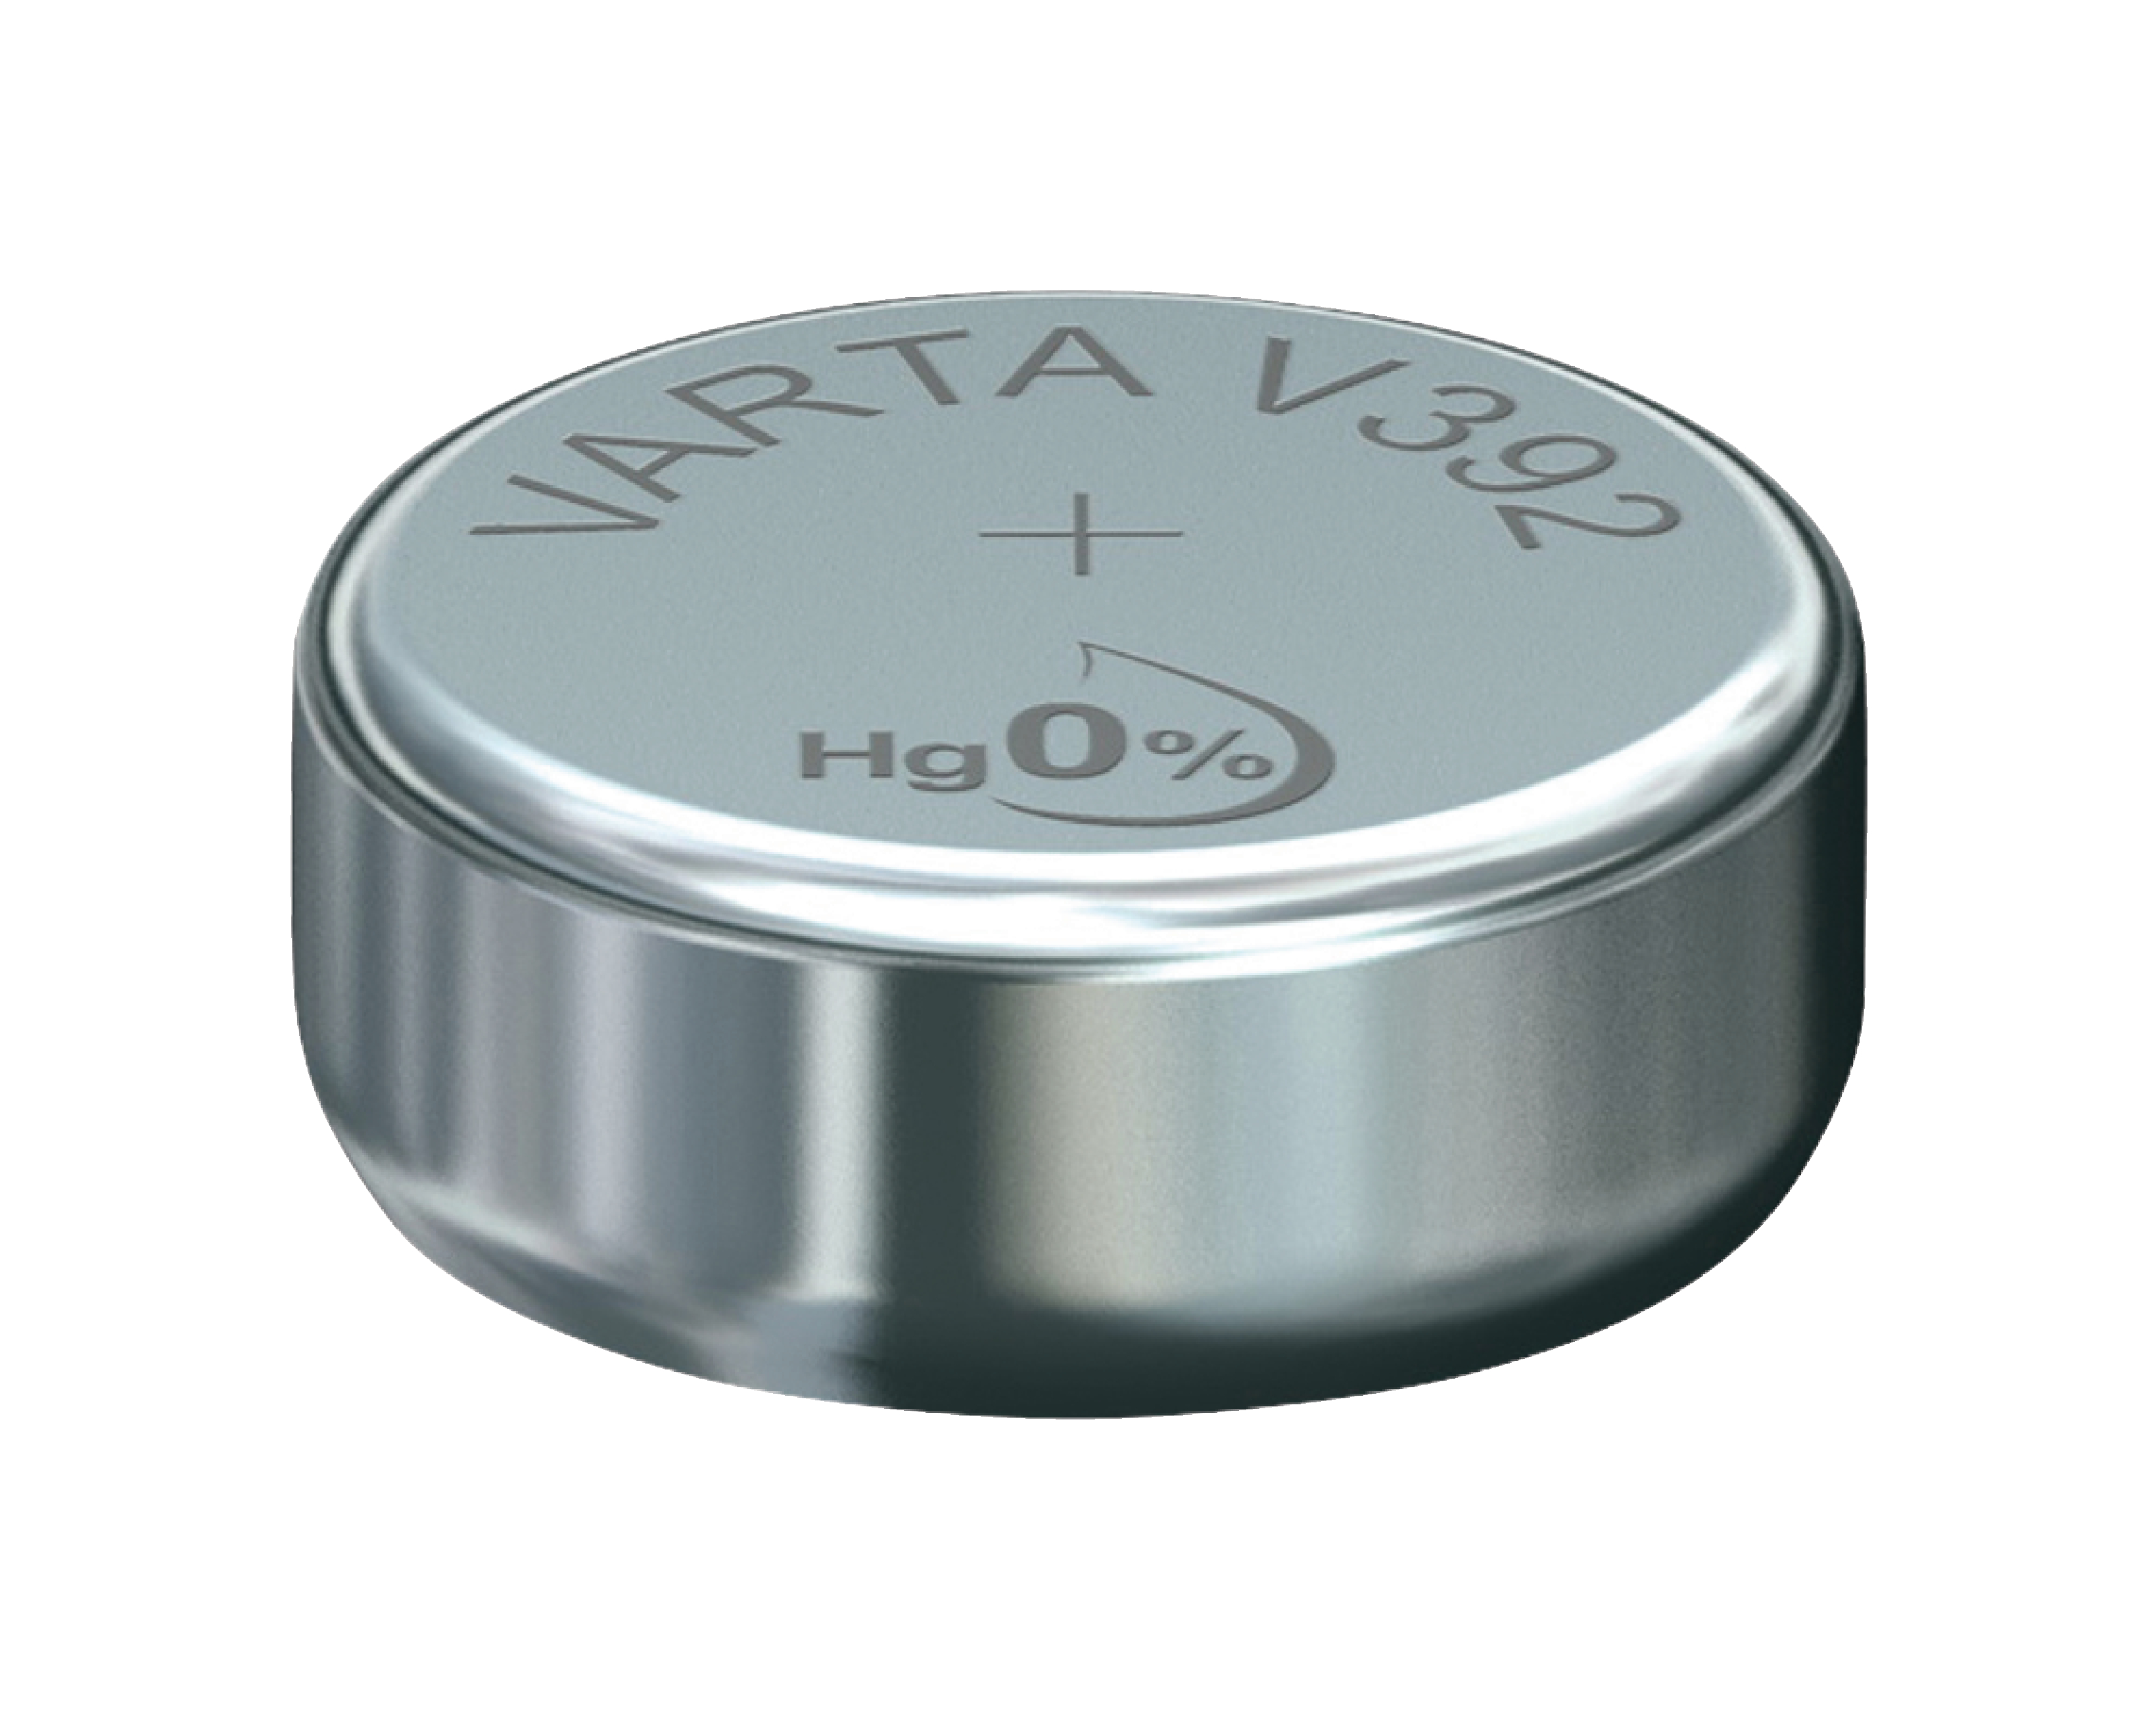 Stříbro-oxidová hodinková baterie SR41/V392 1.55 V 38 mAh, VARTA-V392